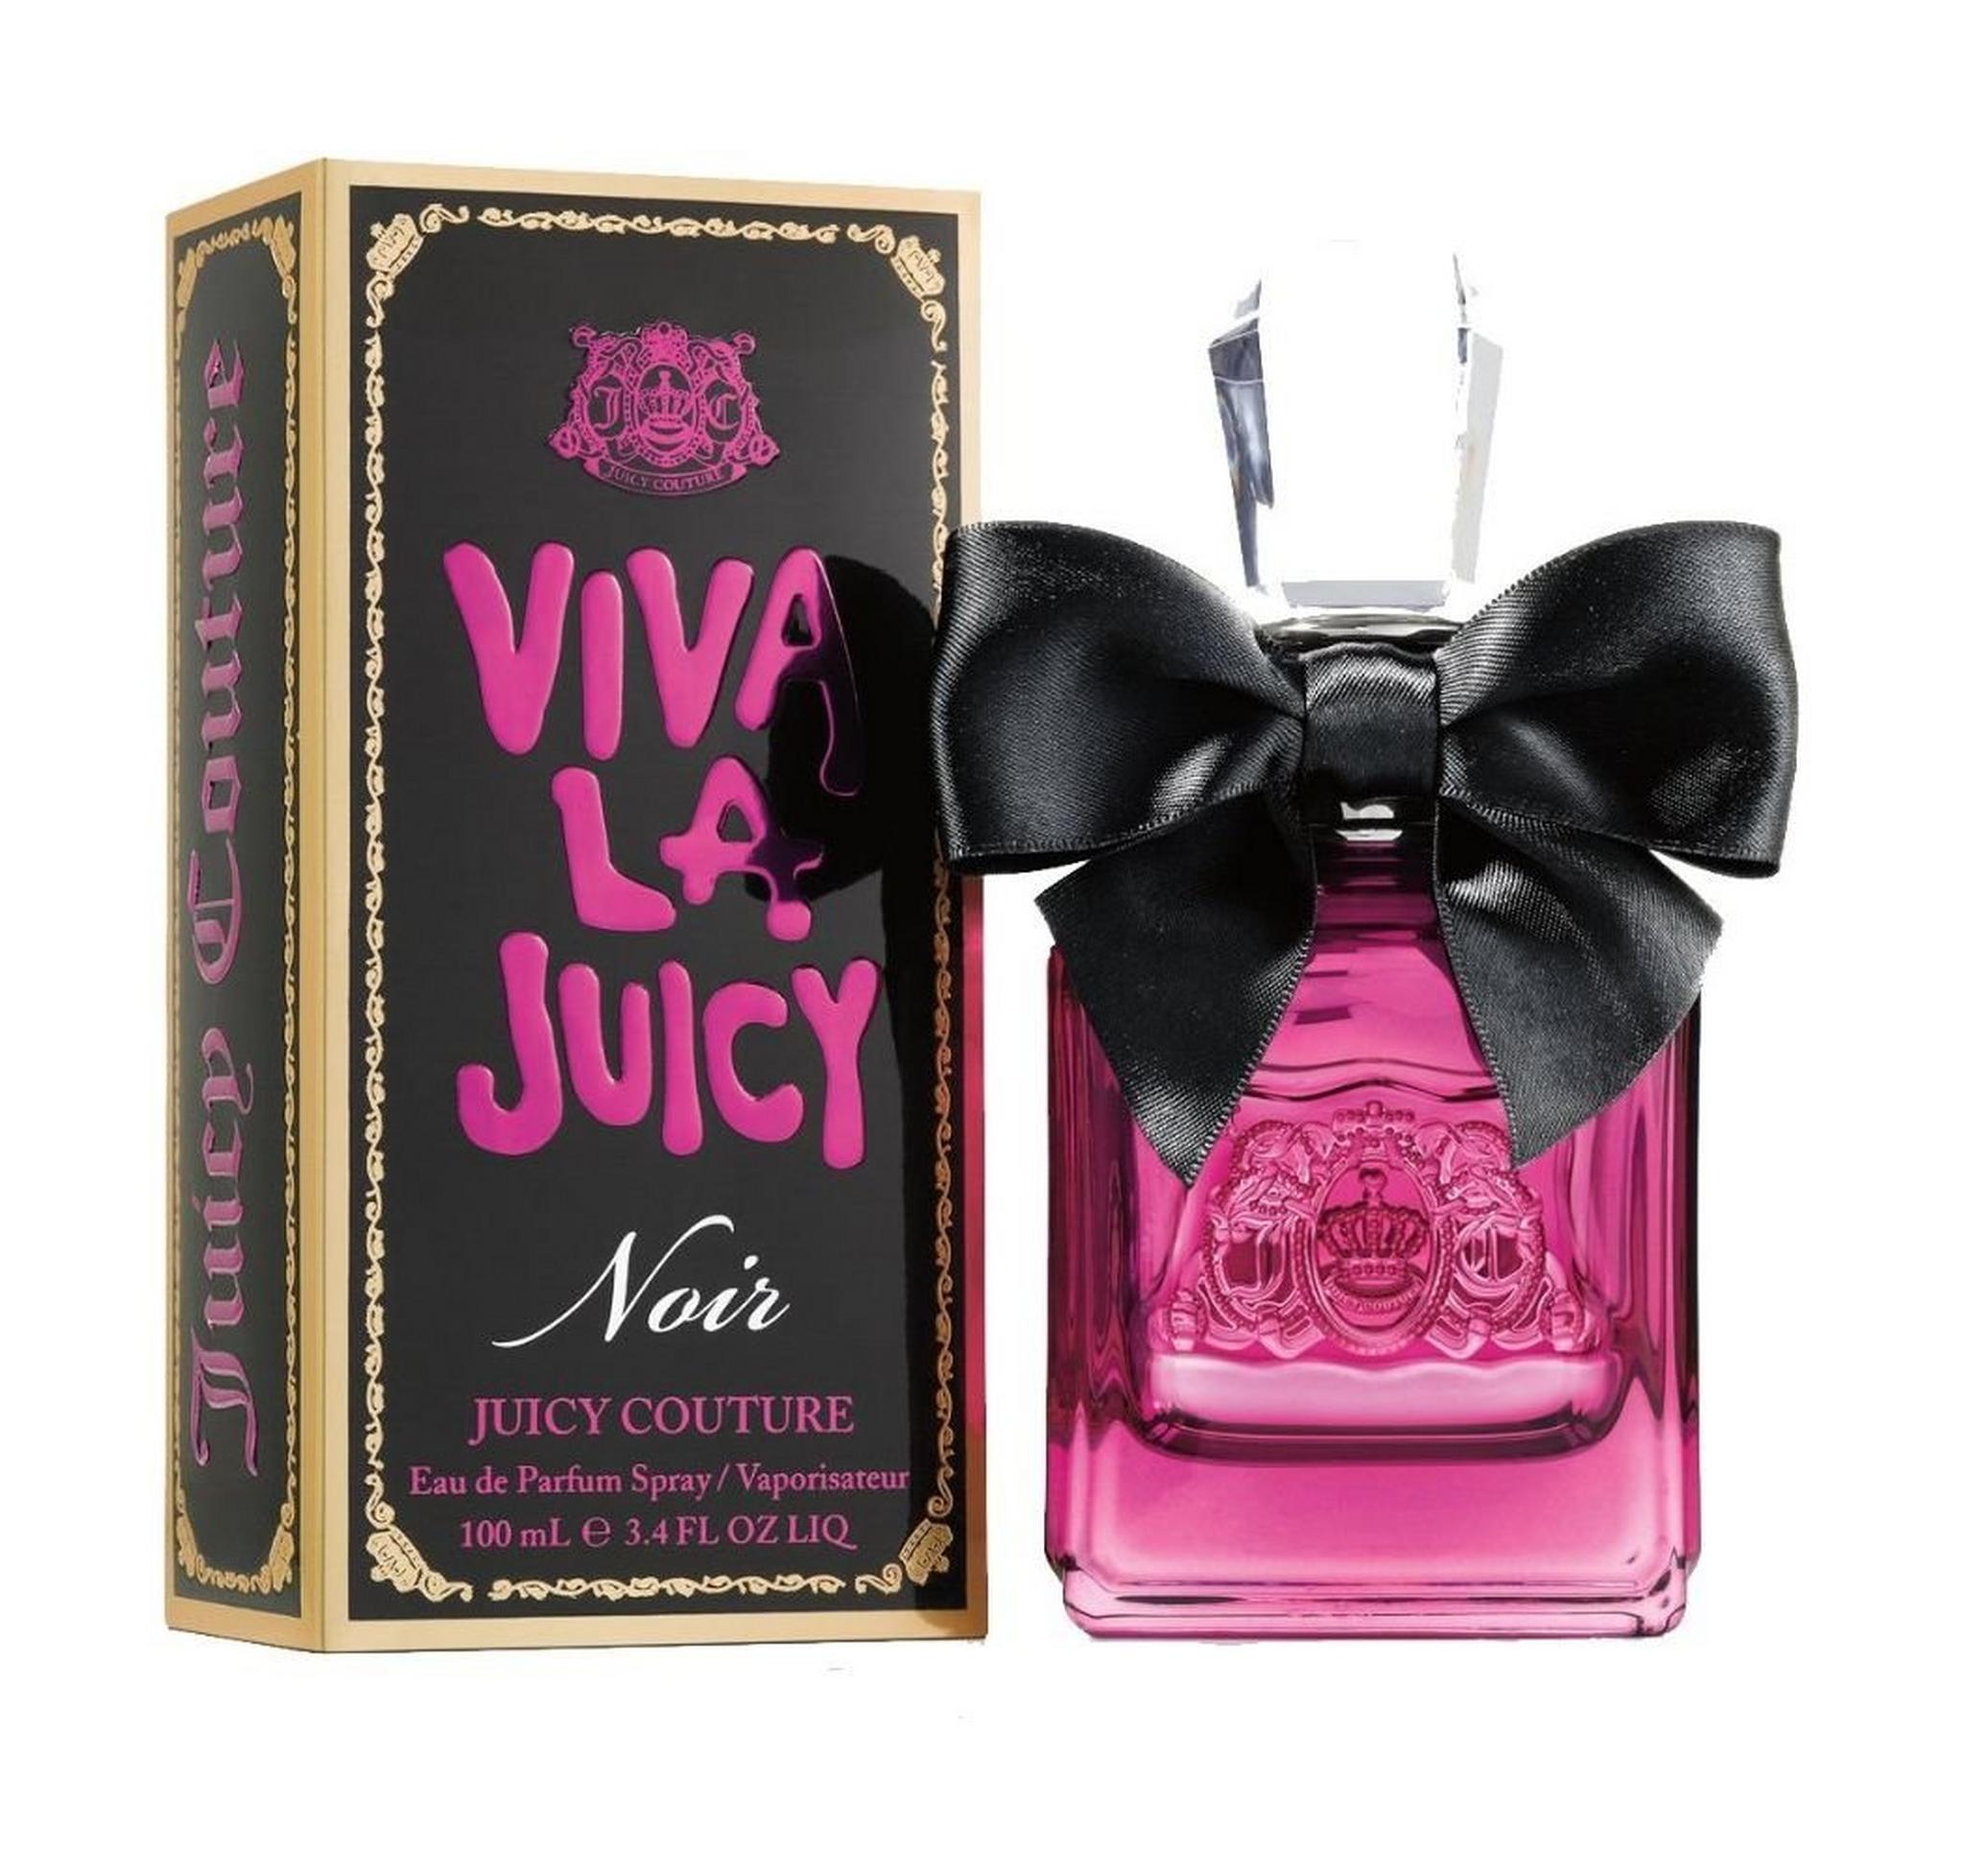 Viva La Juicy Noire by Juicy Couture for Women 100 mL Eau de Toilette